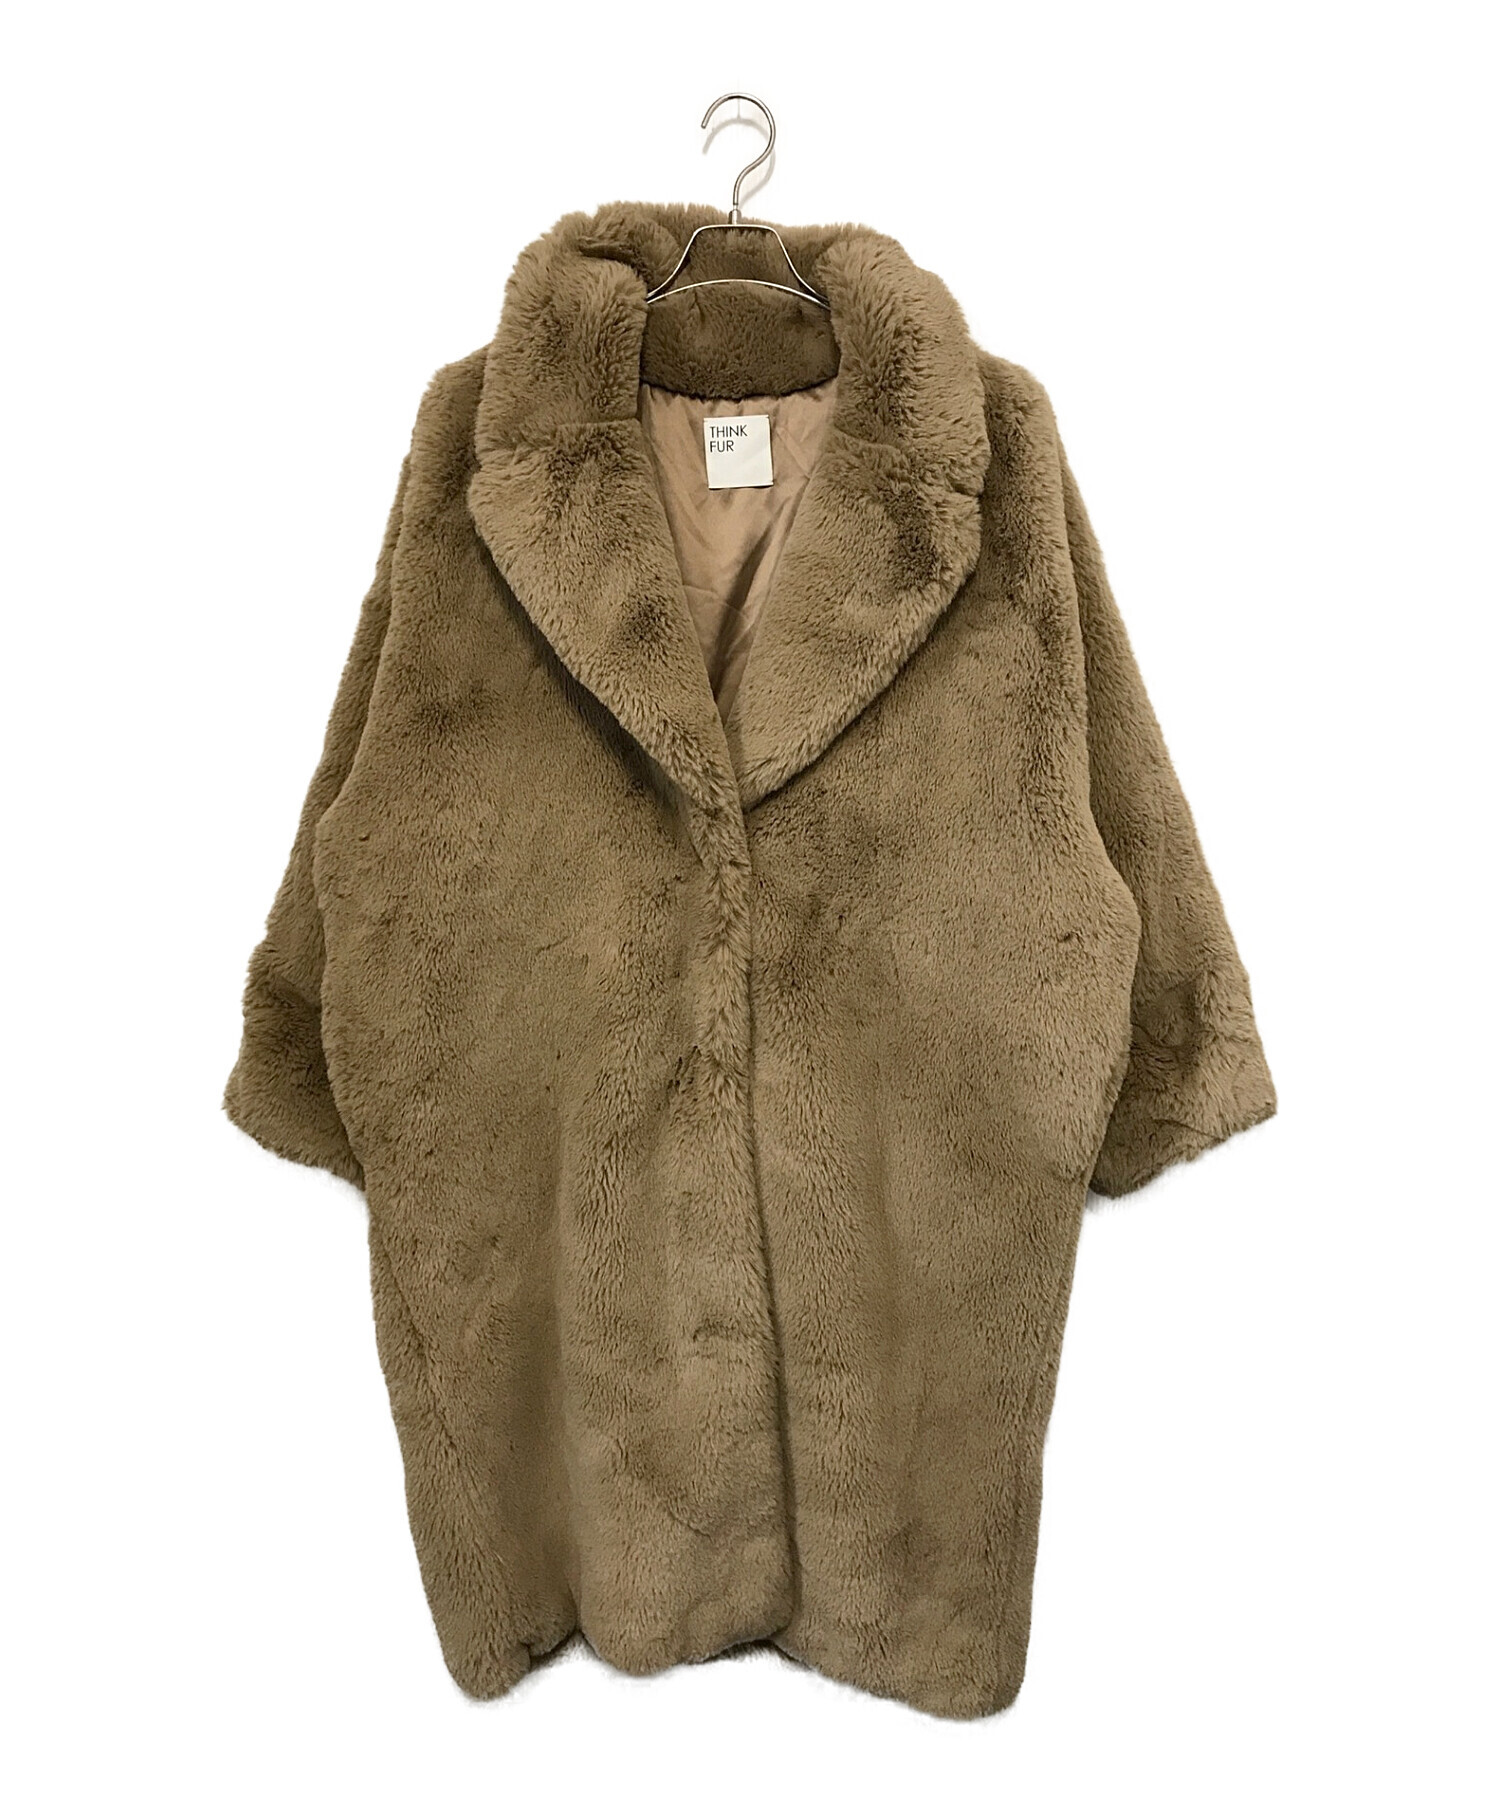 THINK FUR (シンクファー) Eco Fur Tailored Coat/エコ ファー テーラード コート ブラウン サイズ:M